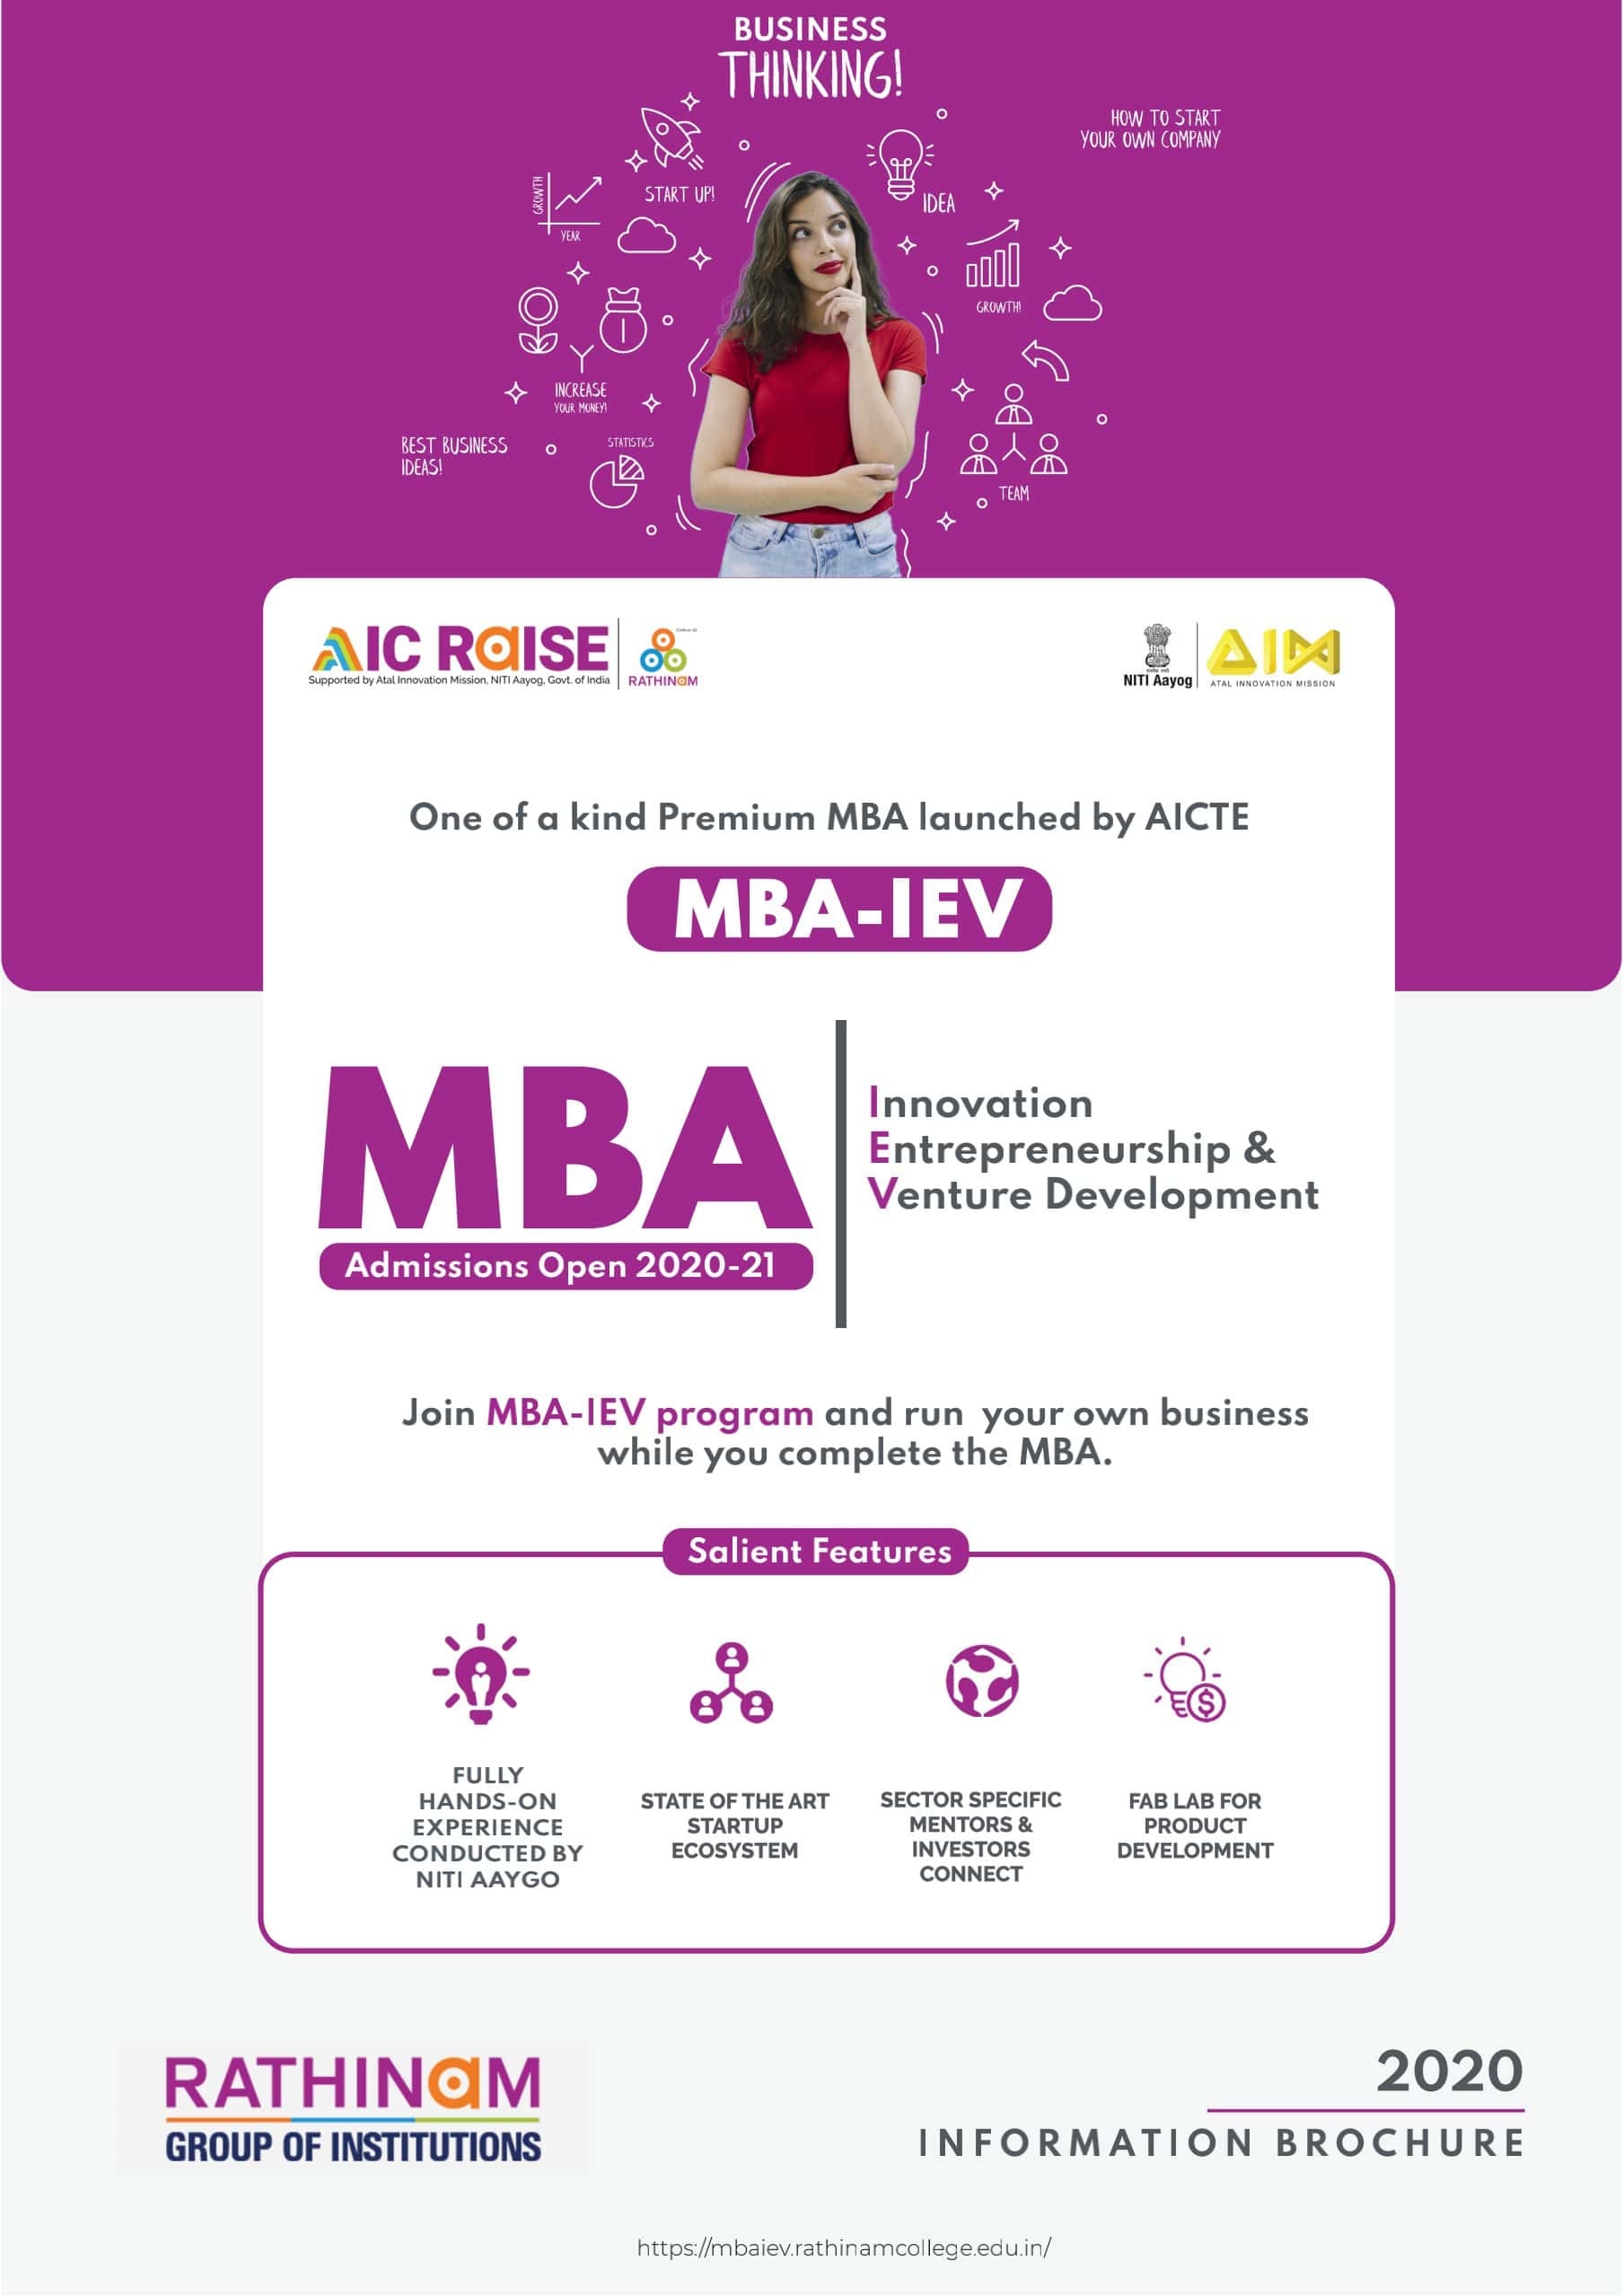 MBA Innovation Entrepreneurship & Venture Development (IEV).